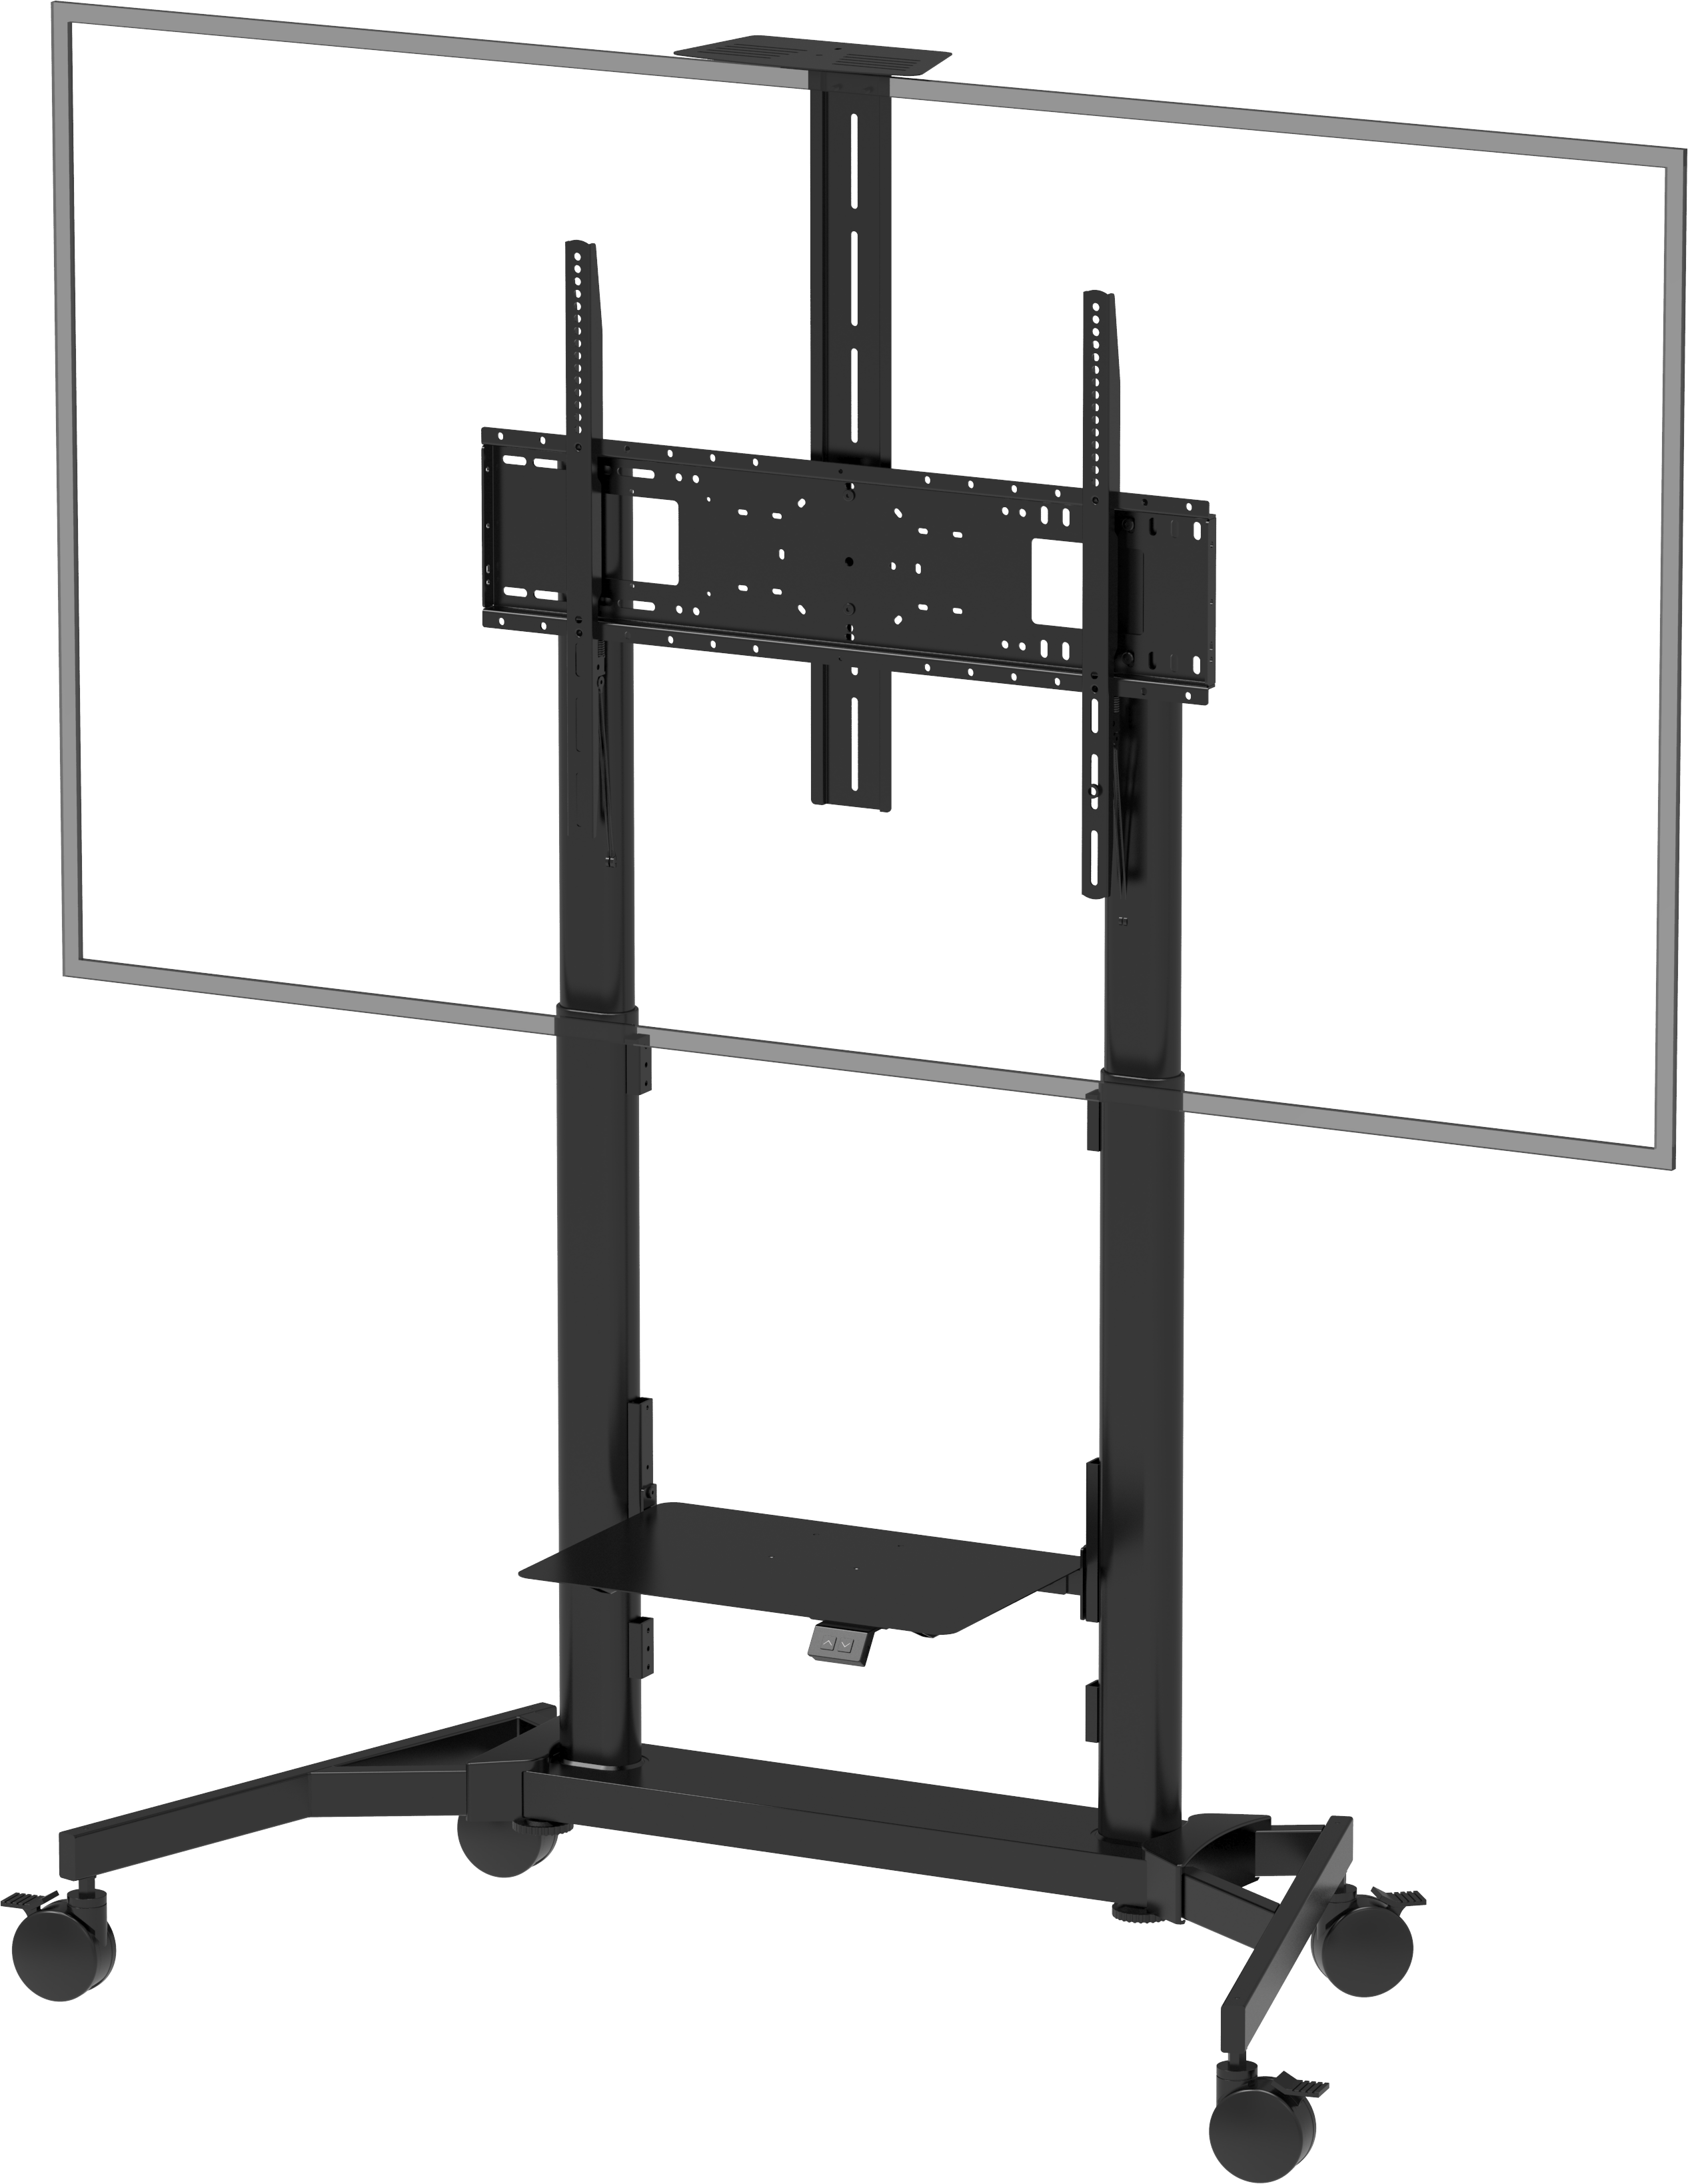 An image showing Suporte para ecrã com rodízios, de altura regulável motorizada, 80 kg